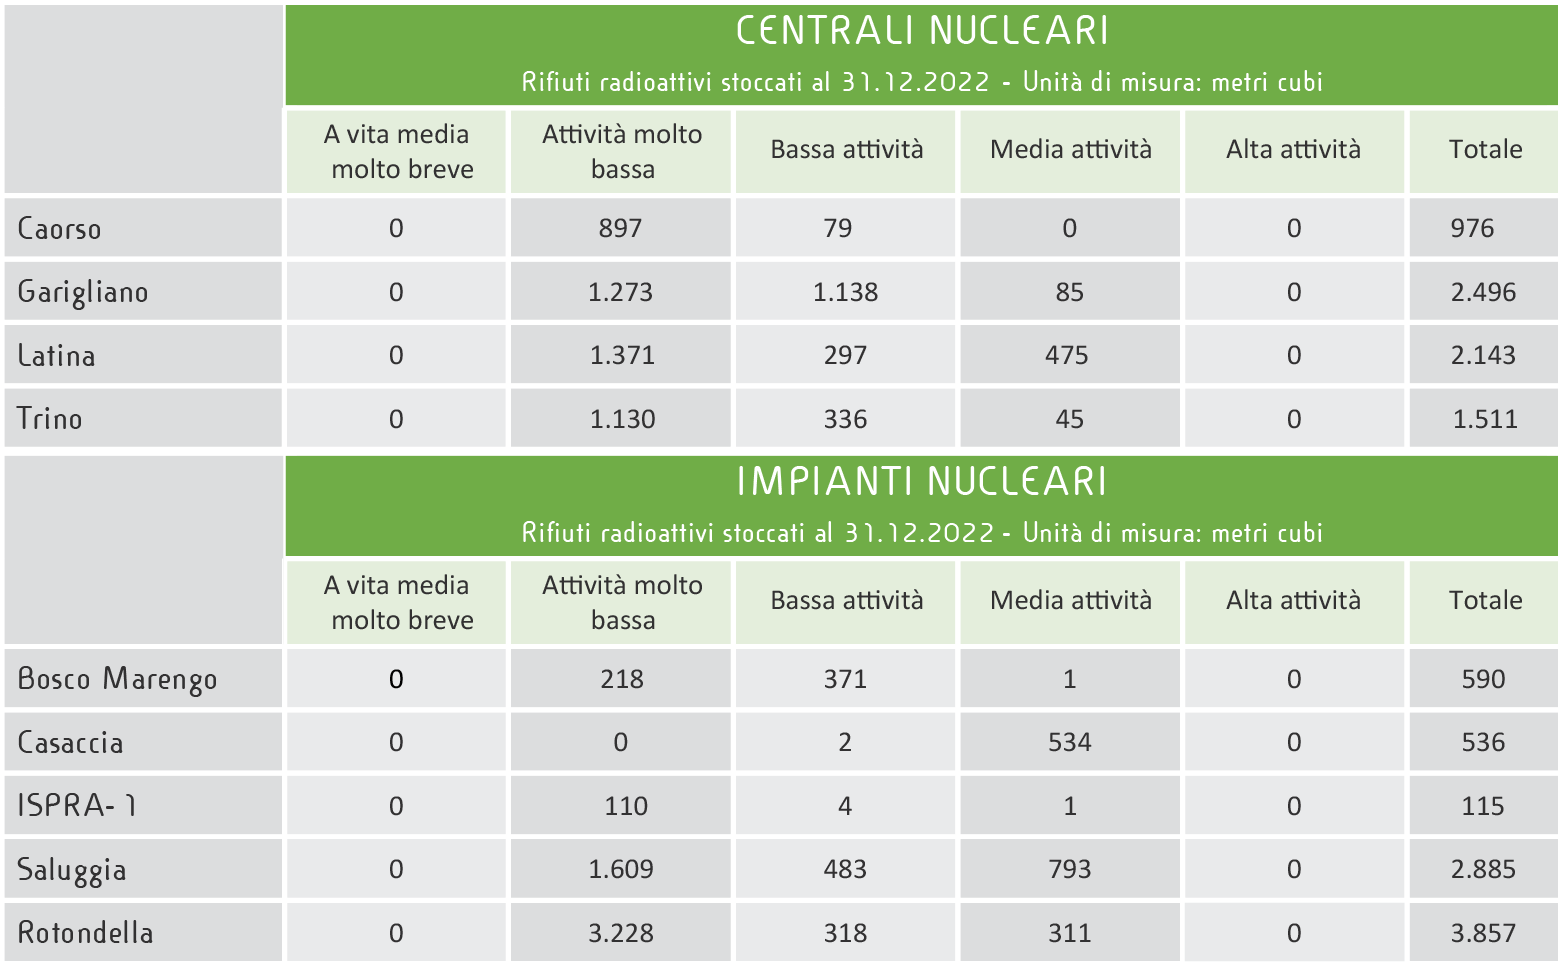 Quantitativi dei rifiuti radioattivi nelle installazioni nucleari - Centrali